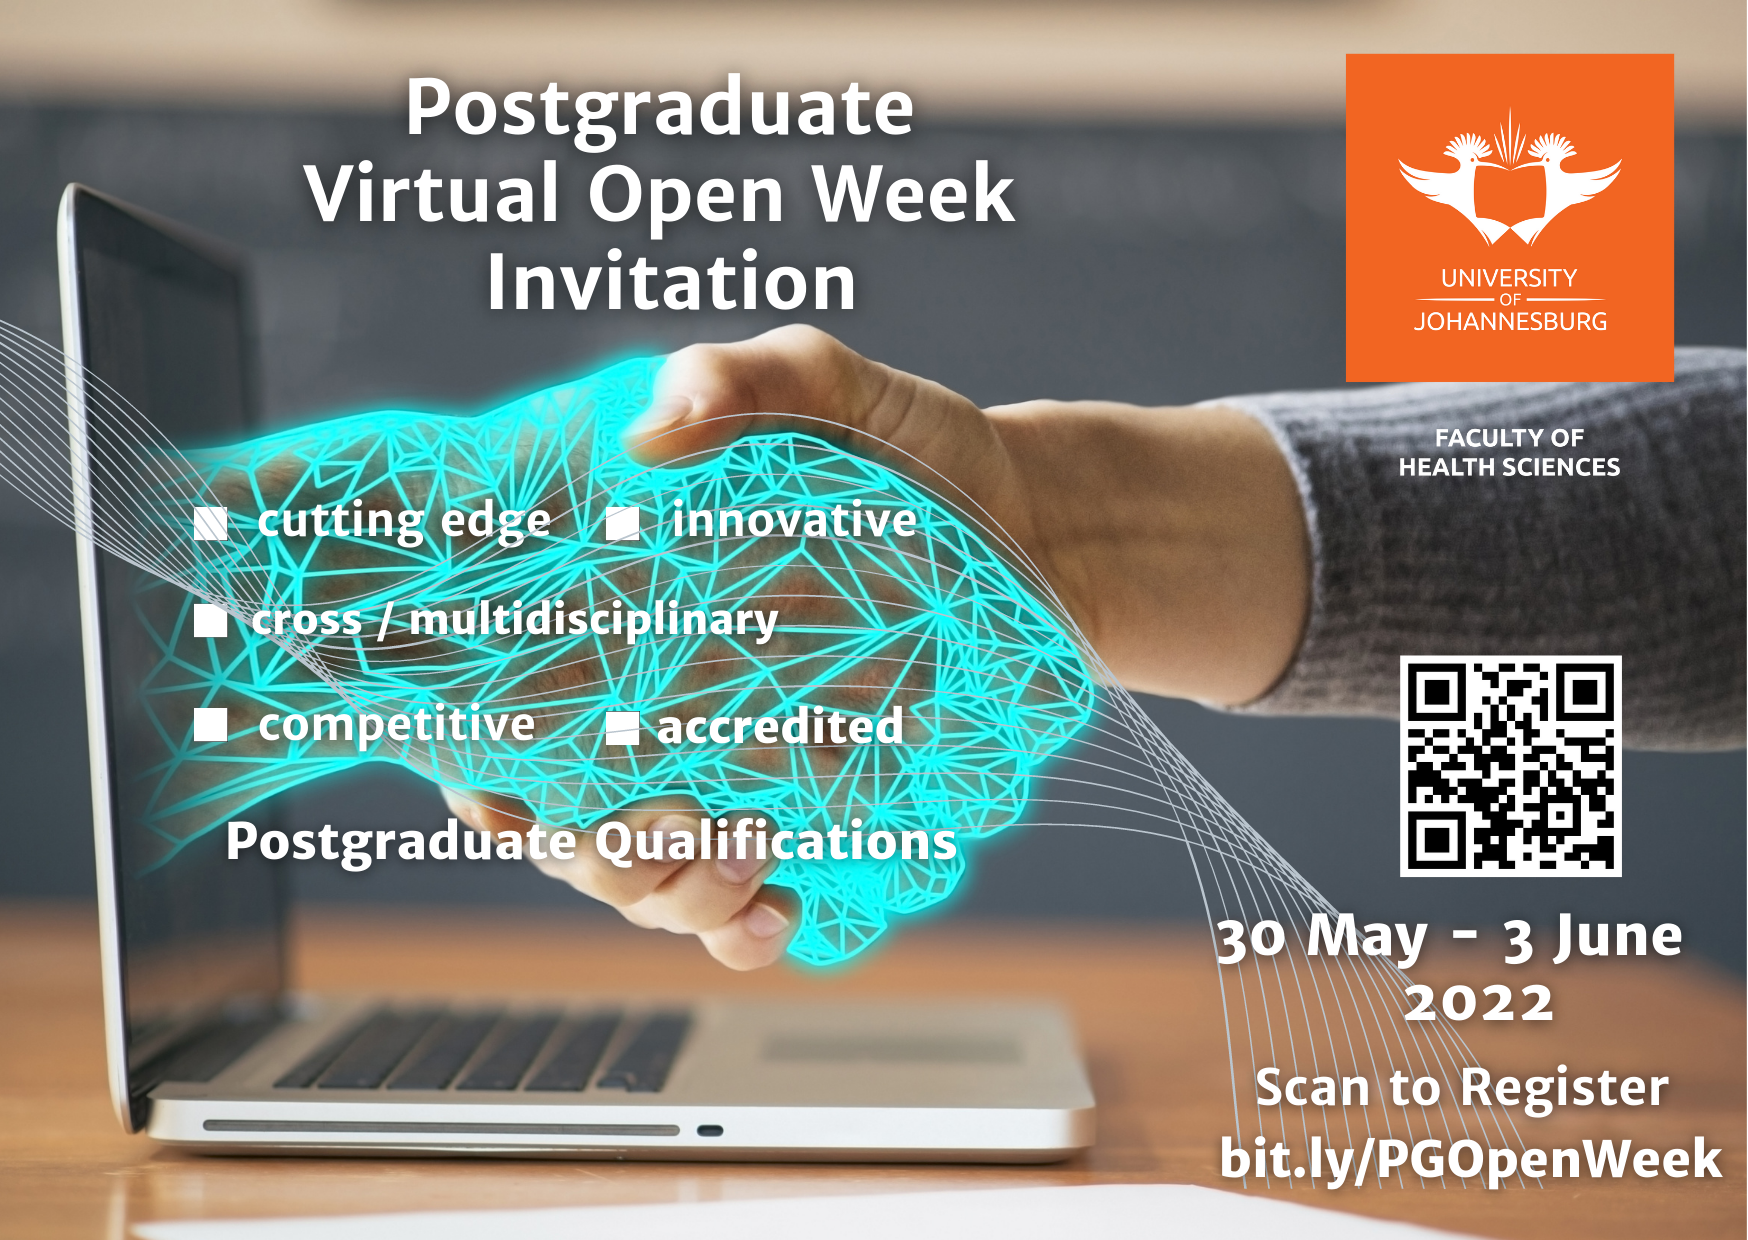 Postgrad Open Week 30 May 3 June 2022